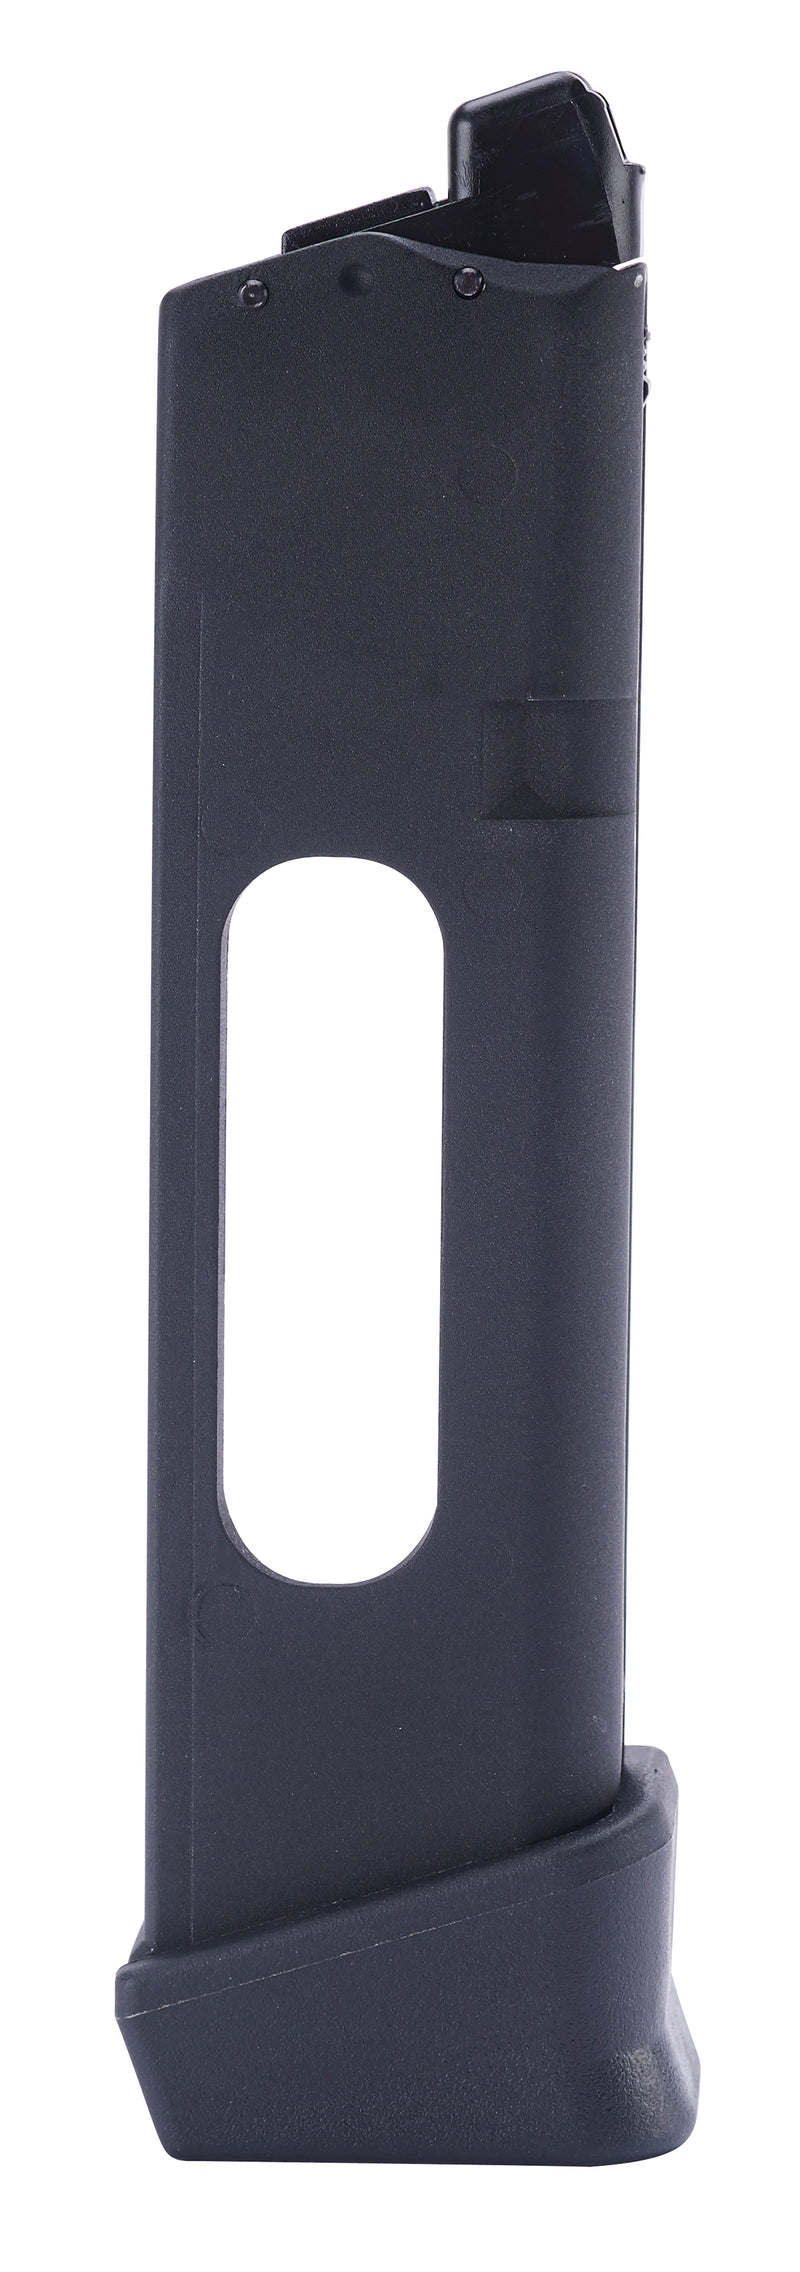 Umarex Glock G17 Gen 4 23 Round Airsoft Pistol CO2 Magazine, Black (2276320)